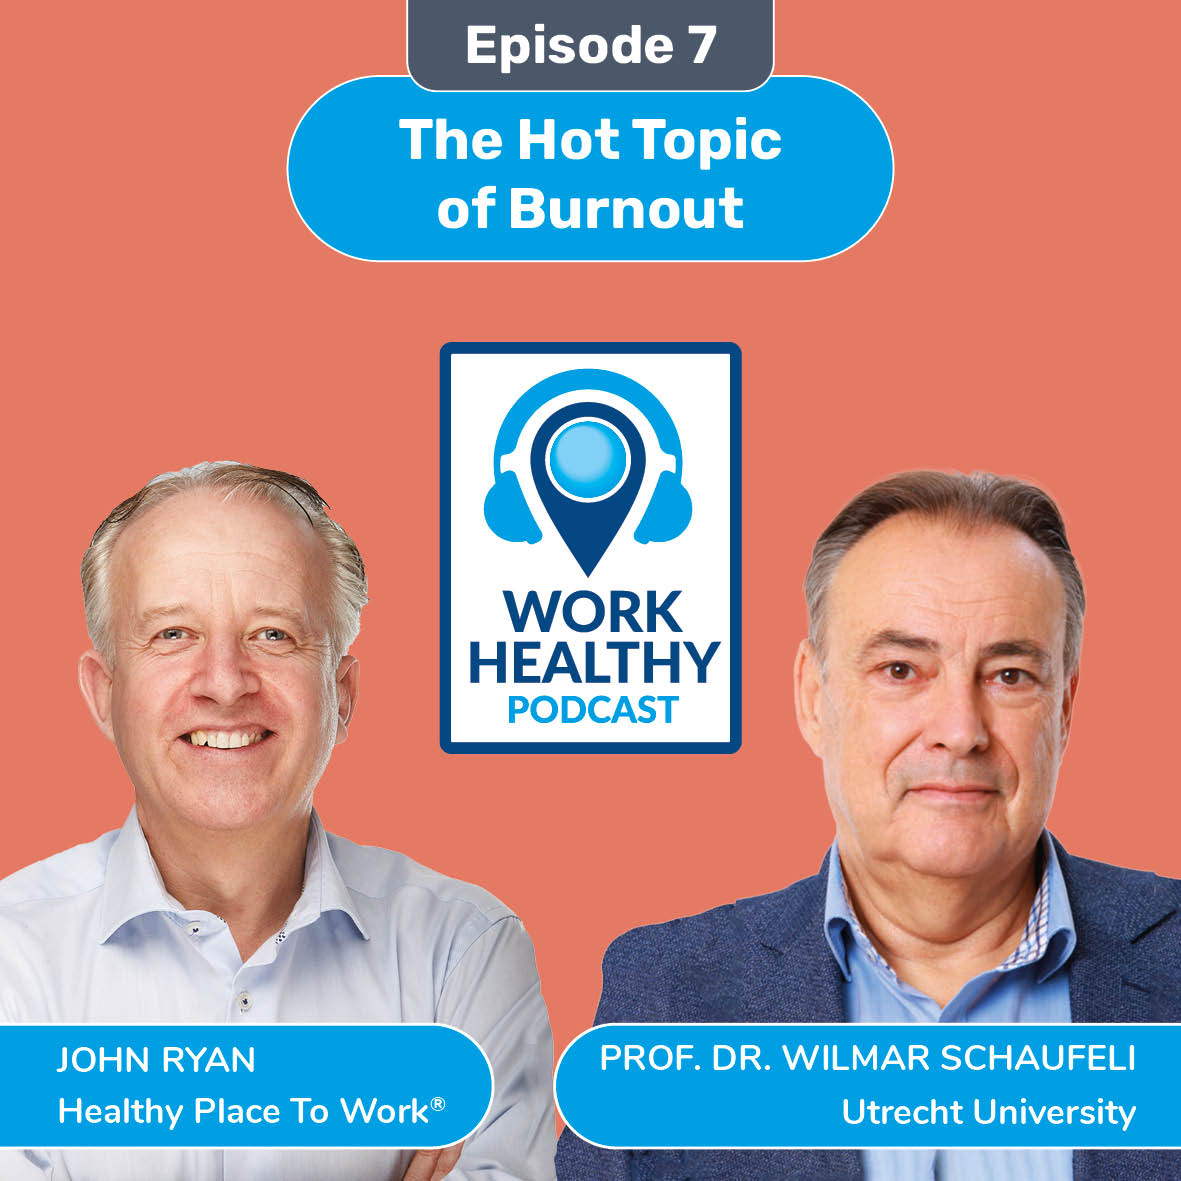 The Hot Topic of Burnout - Prof. Dr. Wilmar Schaufeli